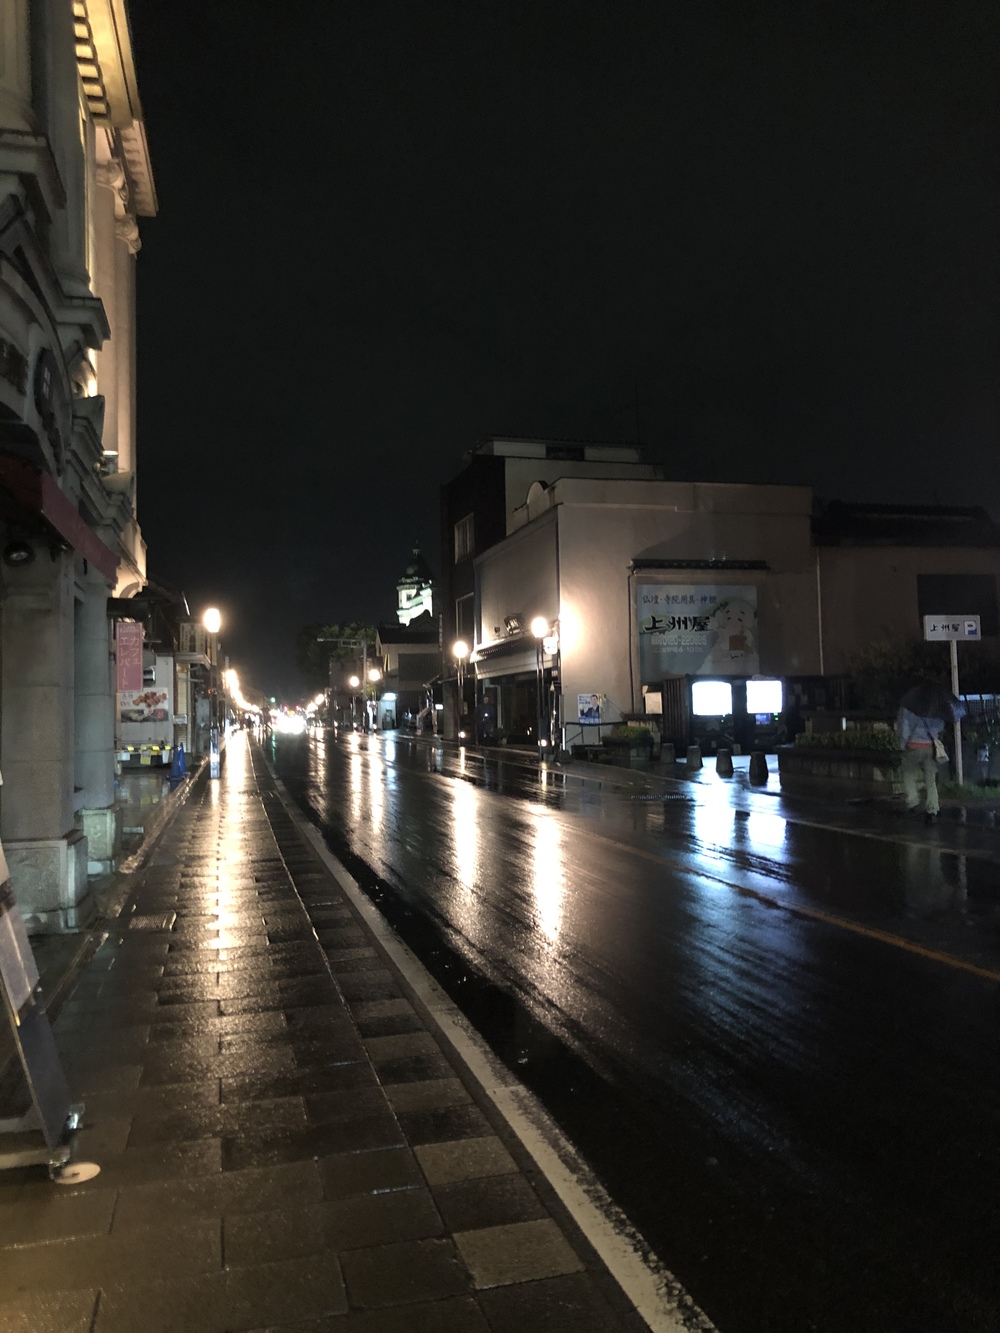 [夜の小江戸川越をお散歩♪]
レトロな街並み、江戸の情緒が残る小江戸川越に癒されよう！